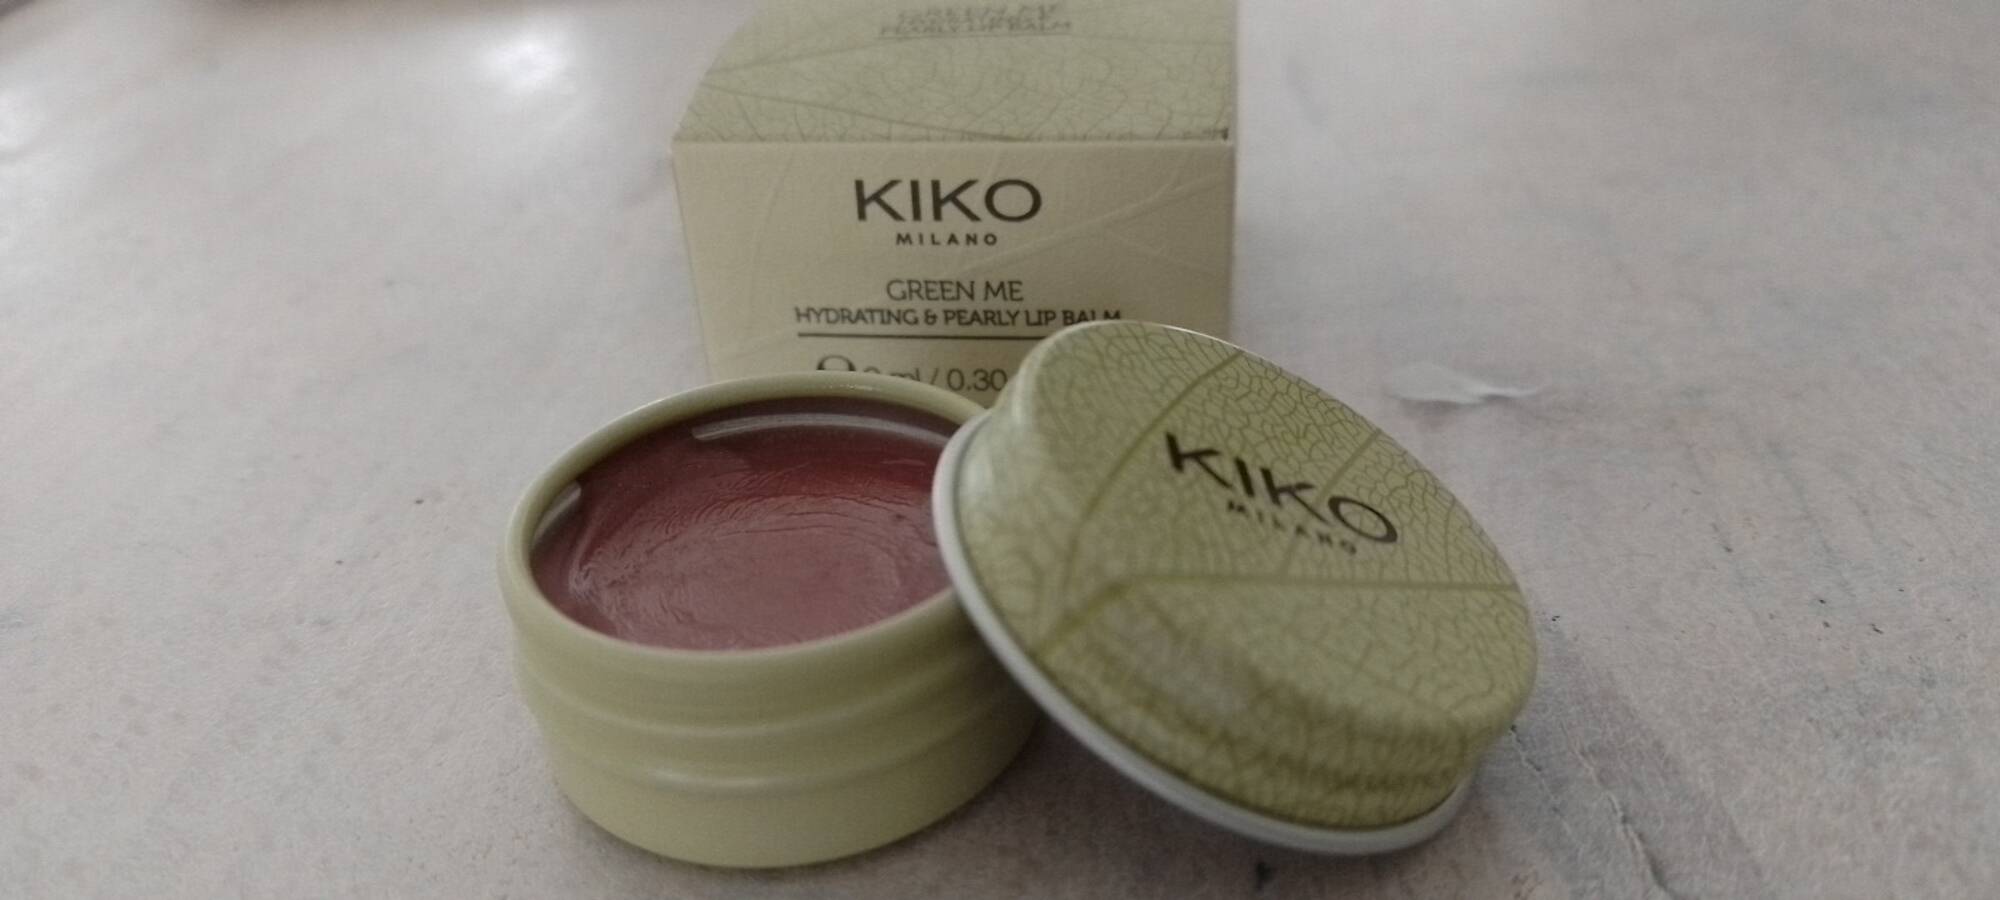 KIKO - Green me - Hydrating & pearly lip balm